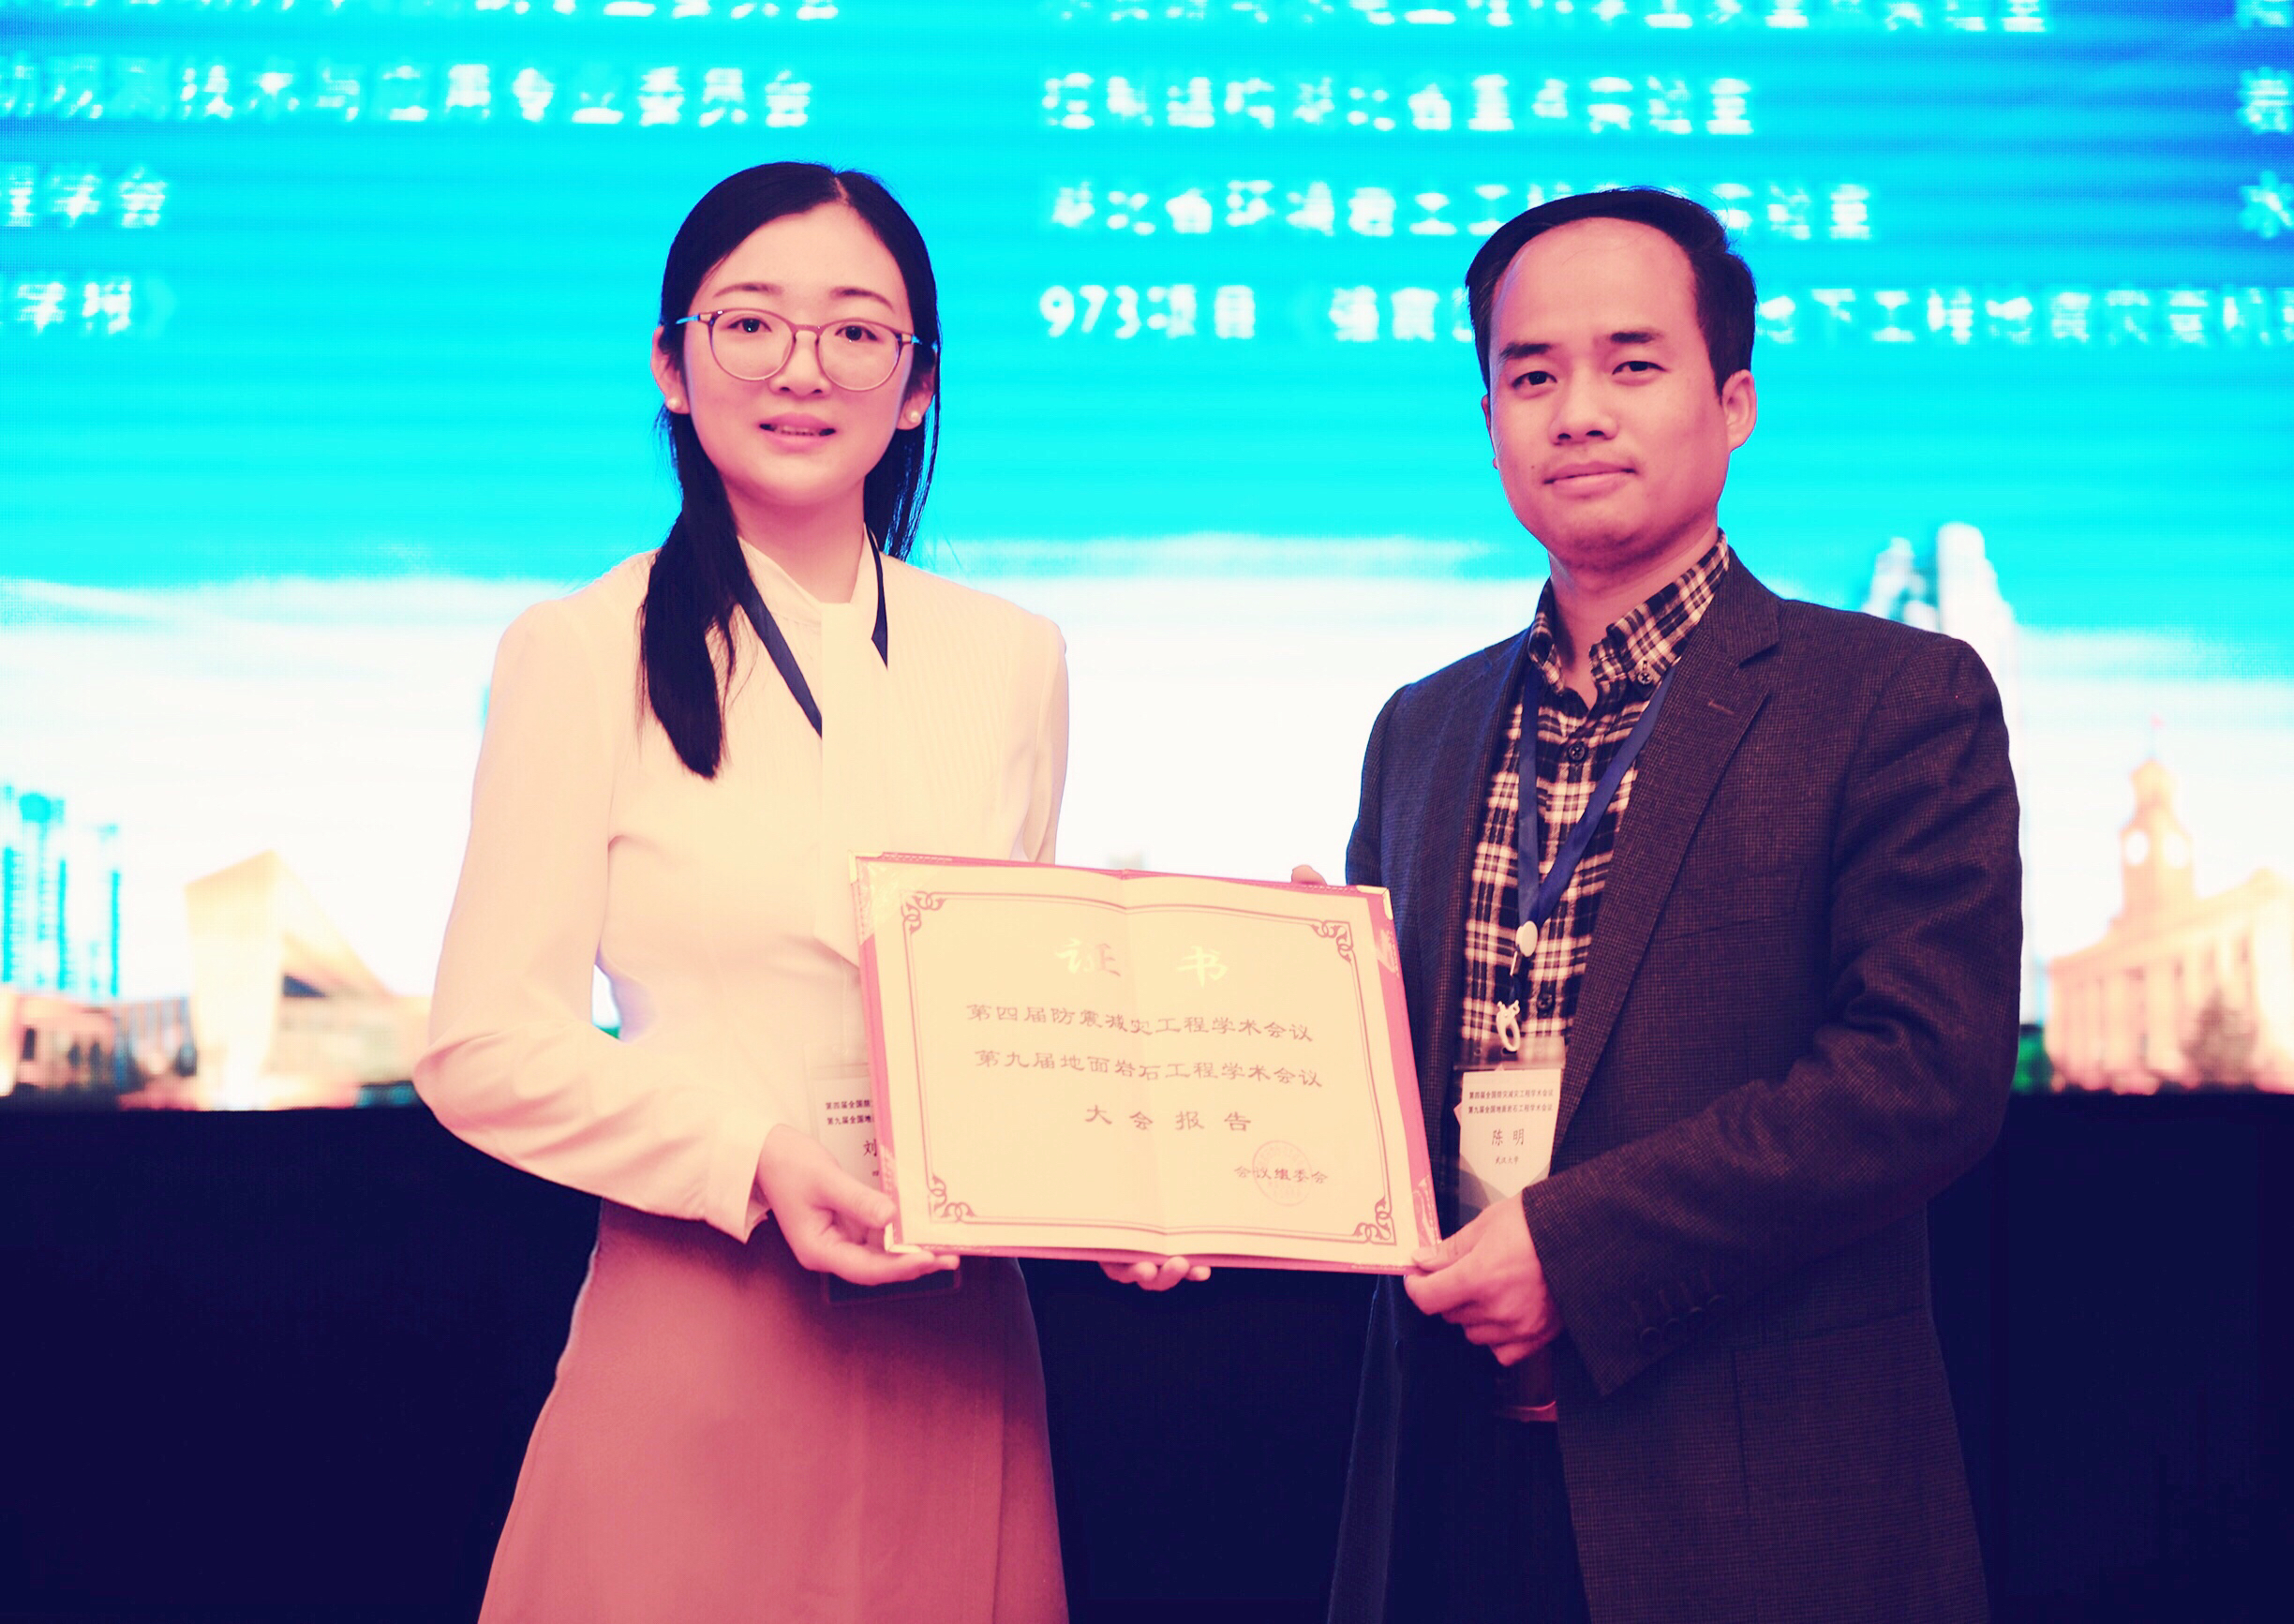 我校2016级博士刘燚获评第十四届中国大学生年度人物称号